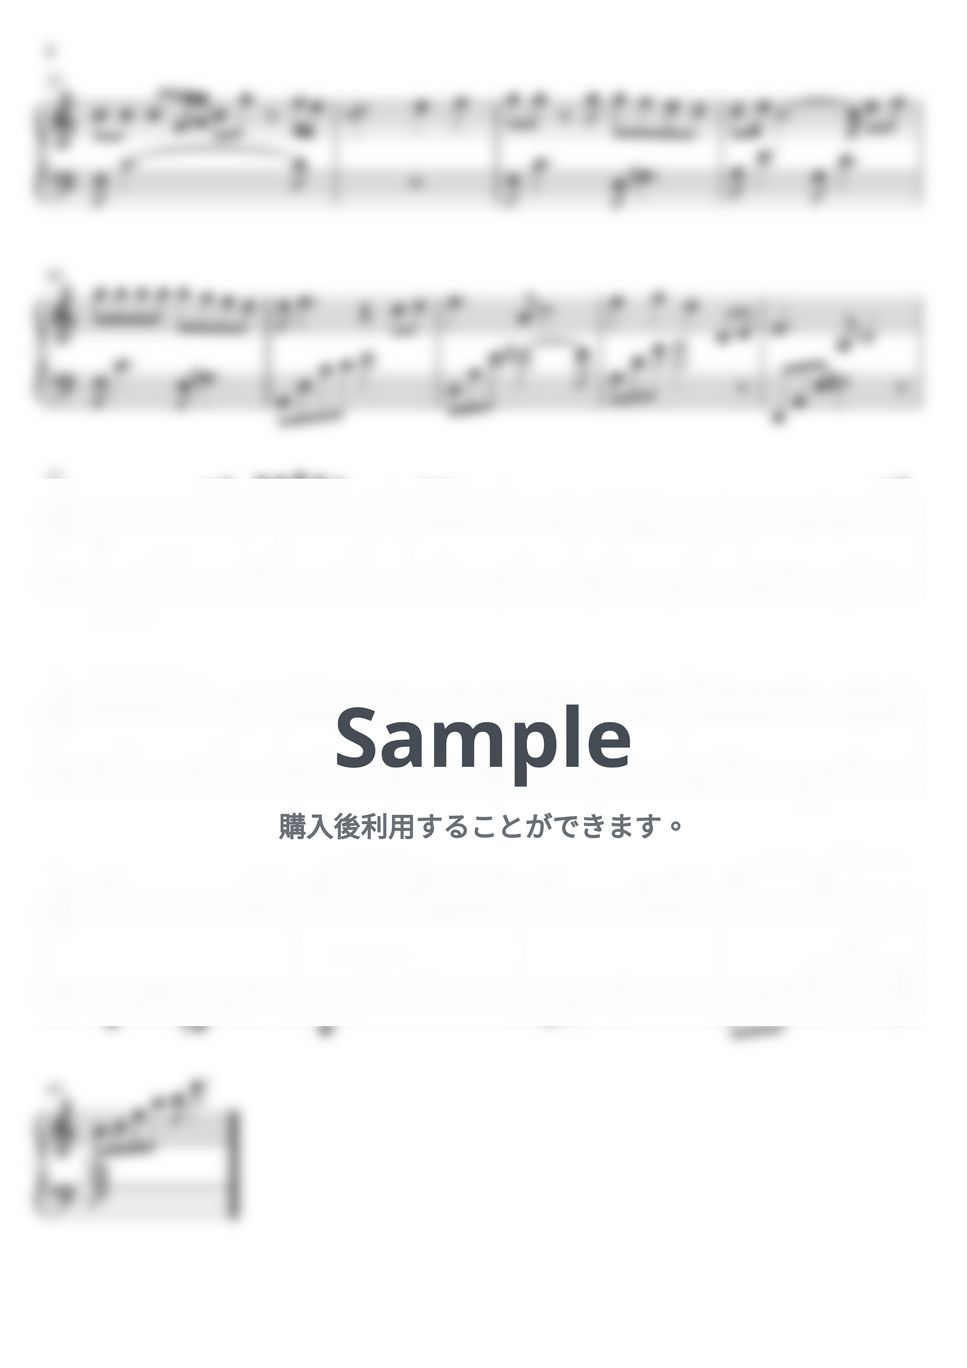 久石譲 - あの夏へ (ピアノ初心者向け / short ver.) by Piano Lovers. jp